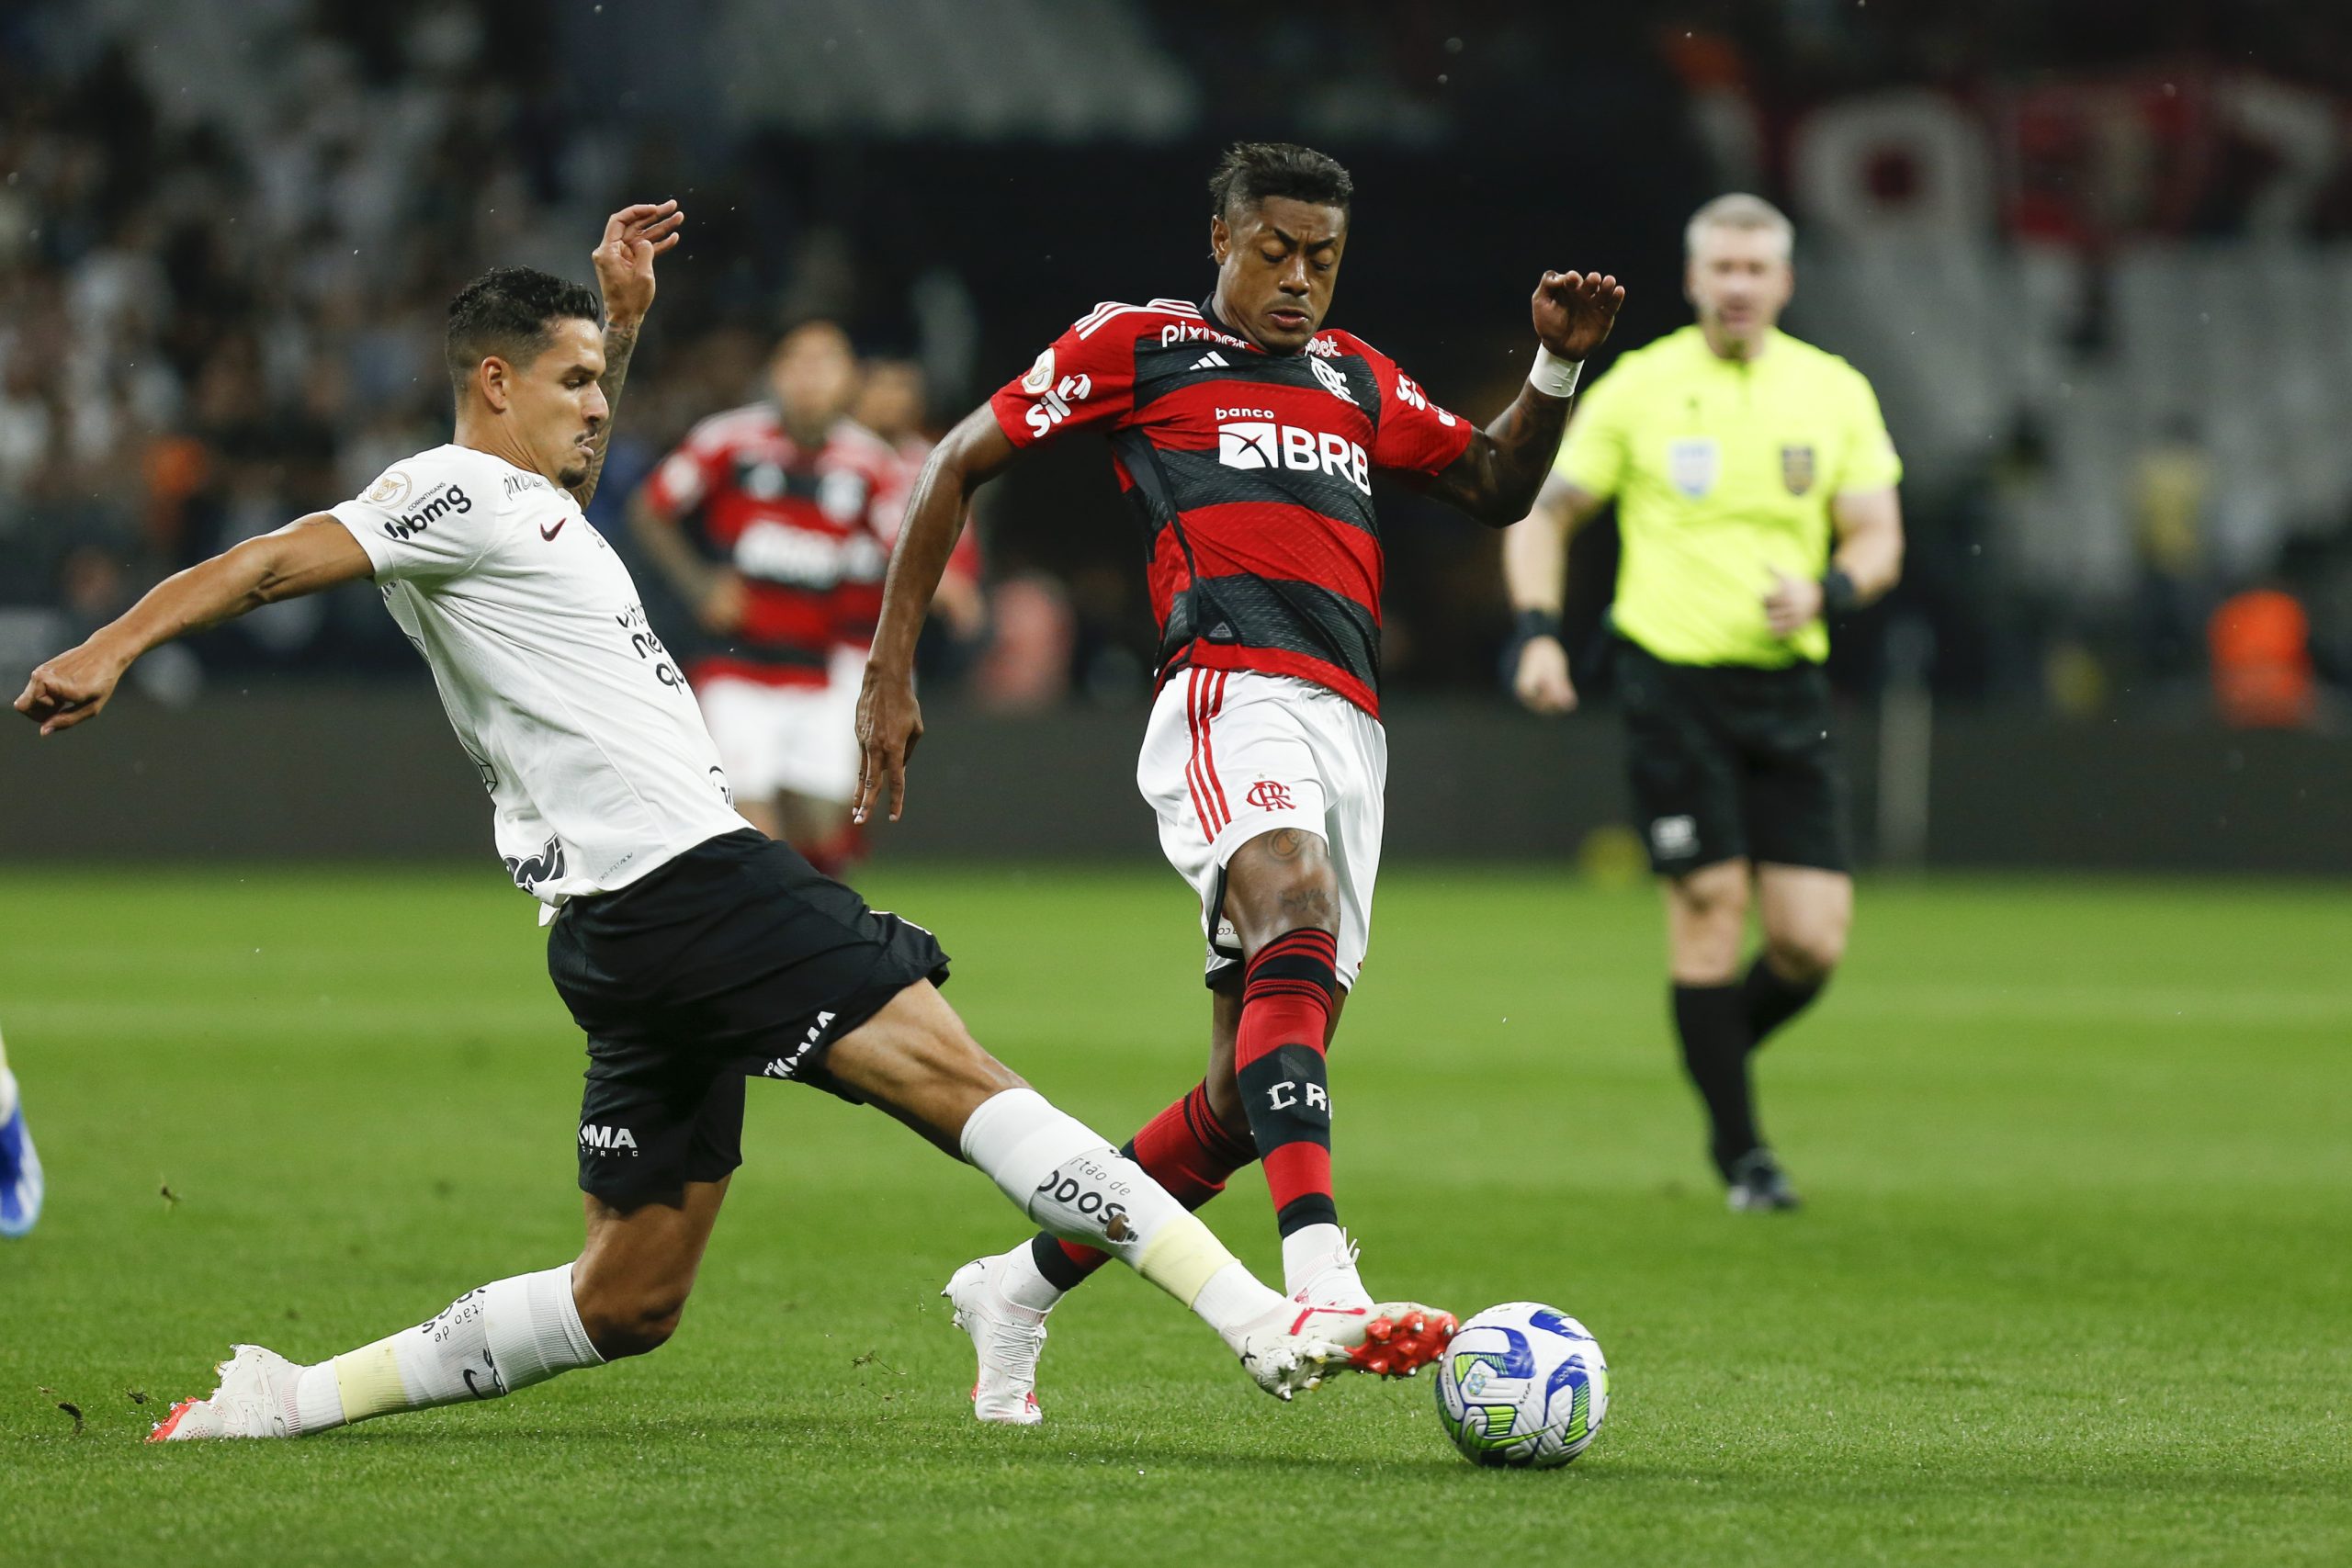 Santos arranca empate do Corinthians com pênalti nos acréscimos